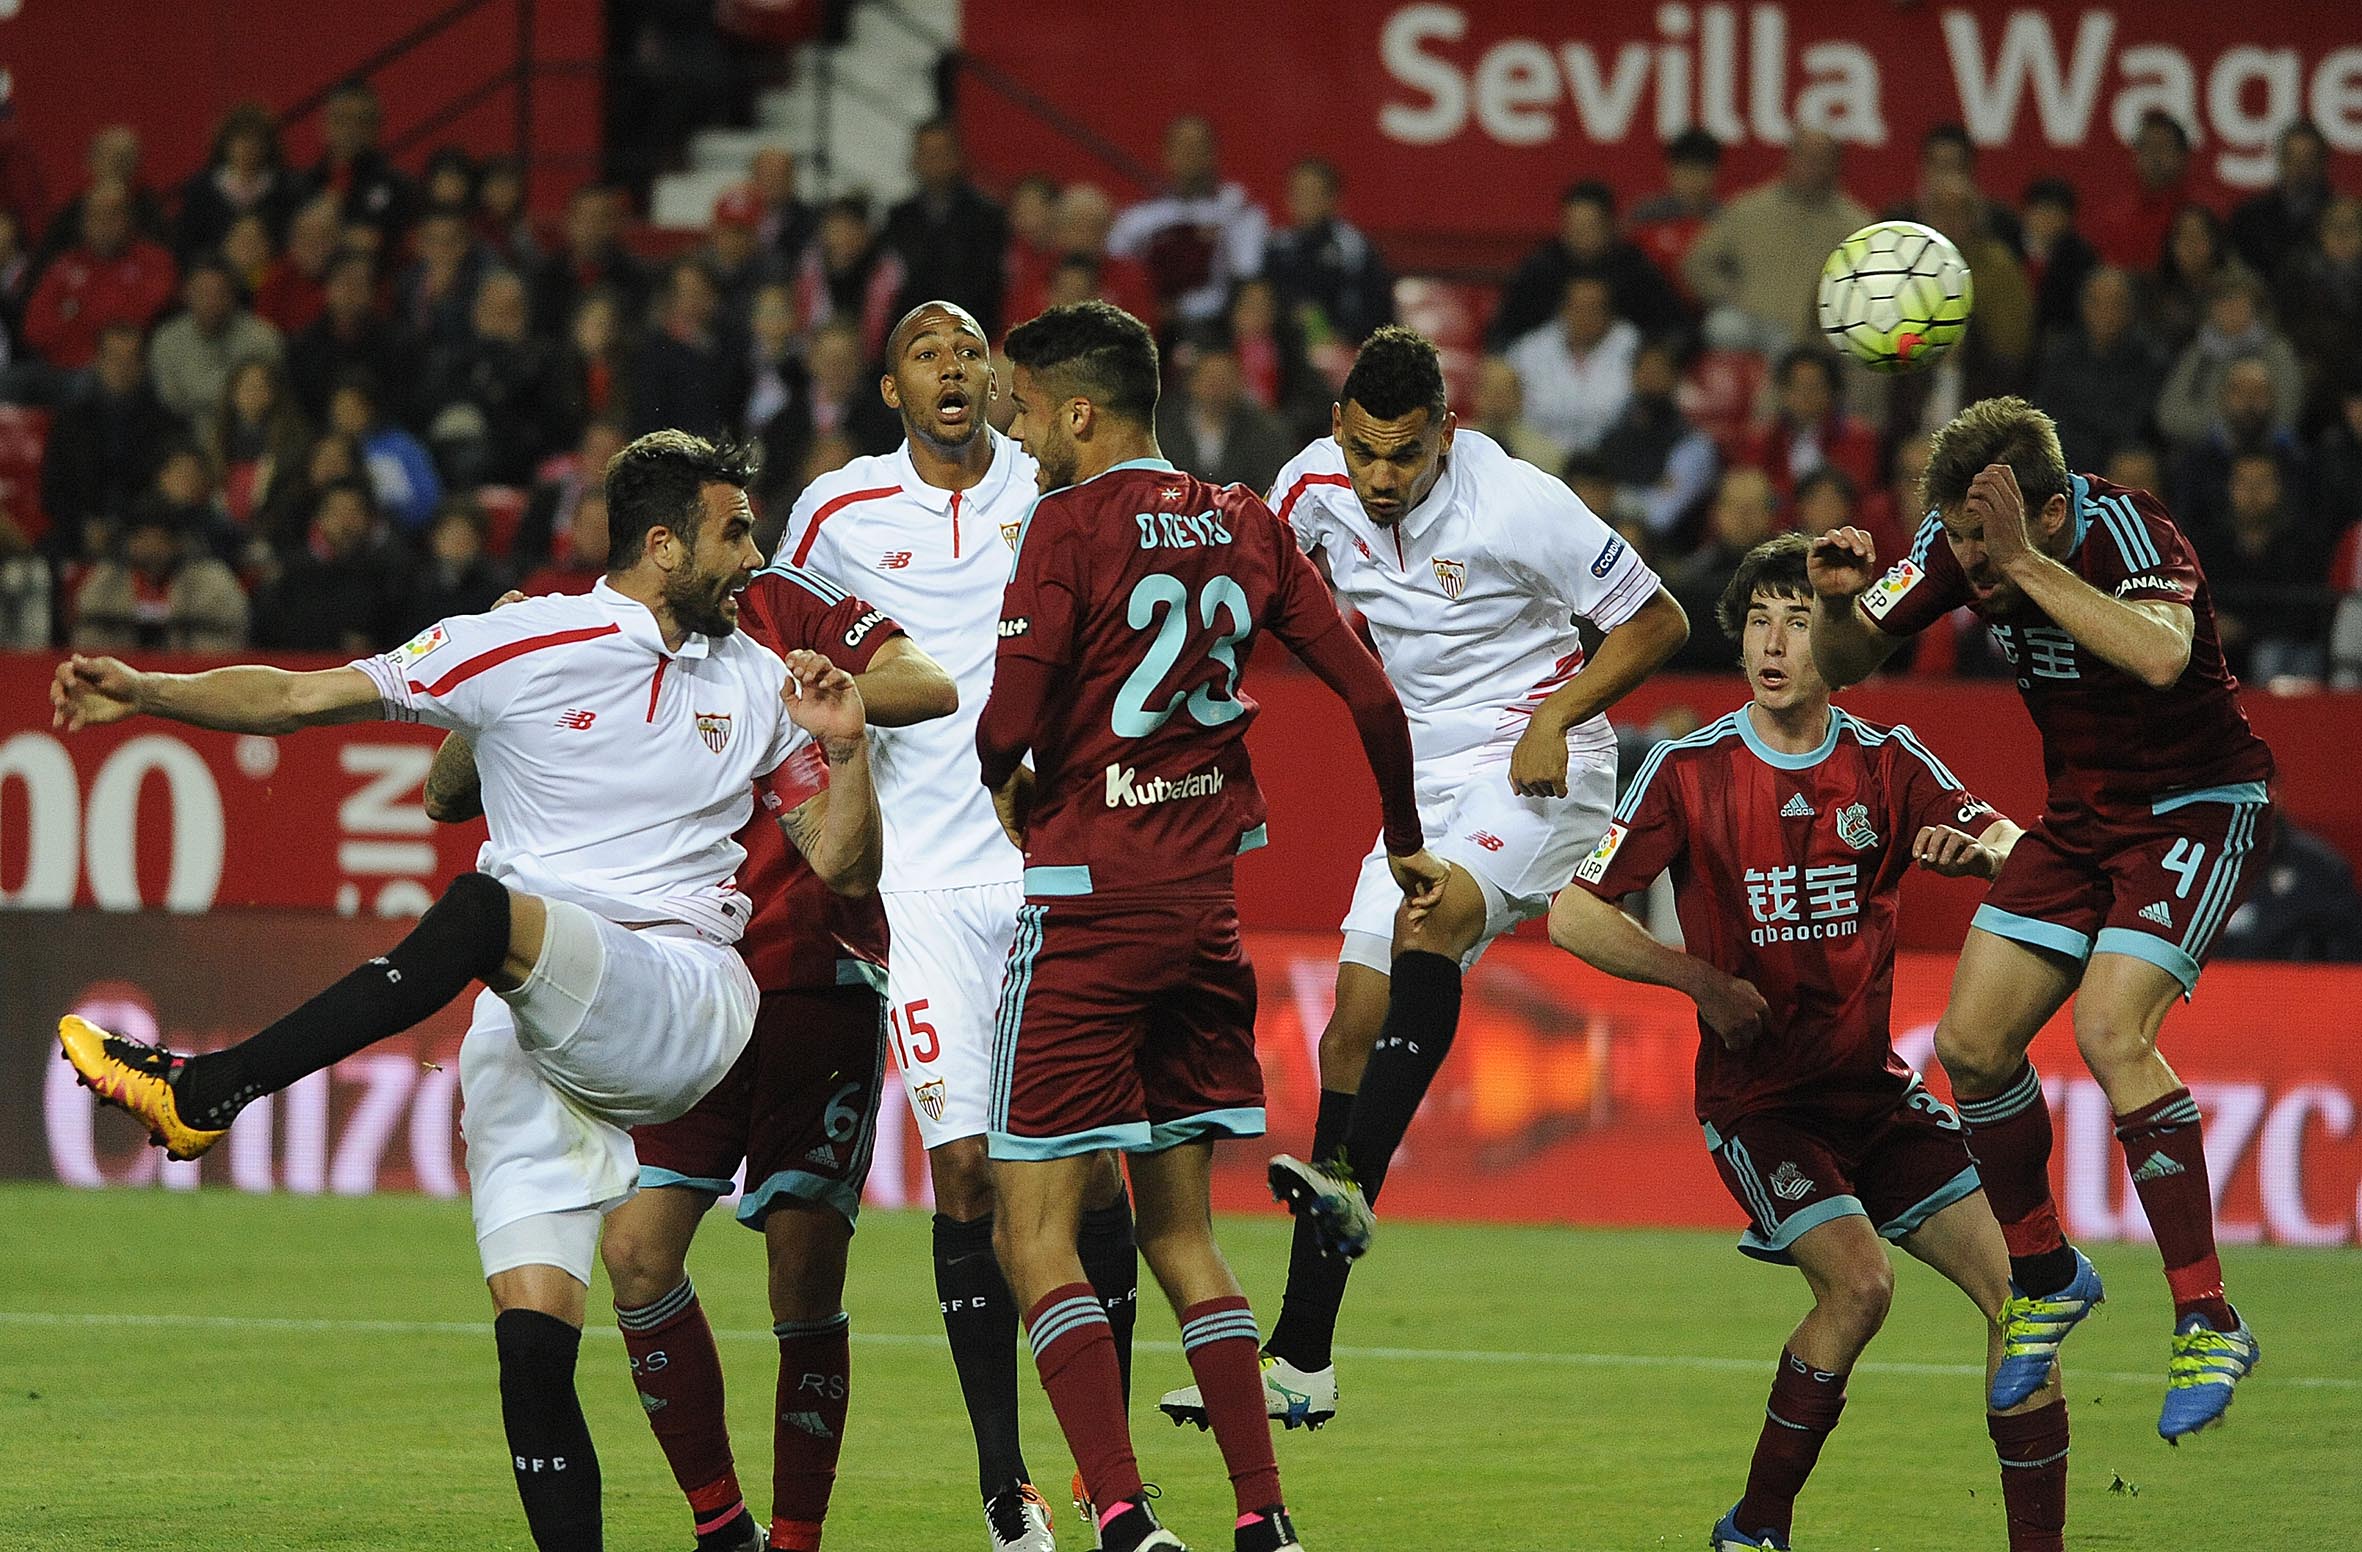 Acción ofensiva del Sevilla FC ante la Real Sociedad